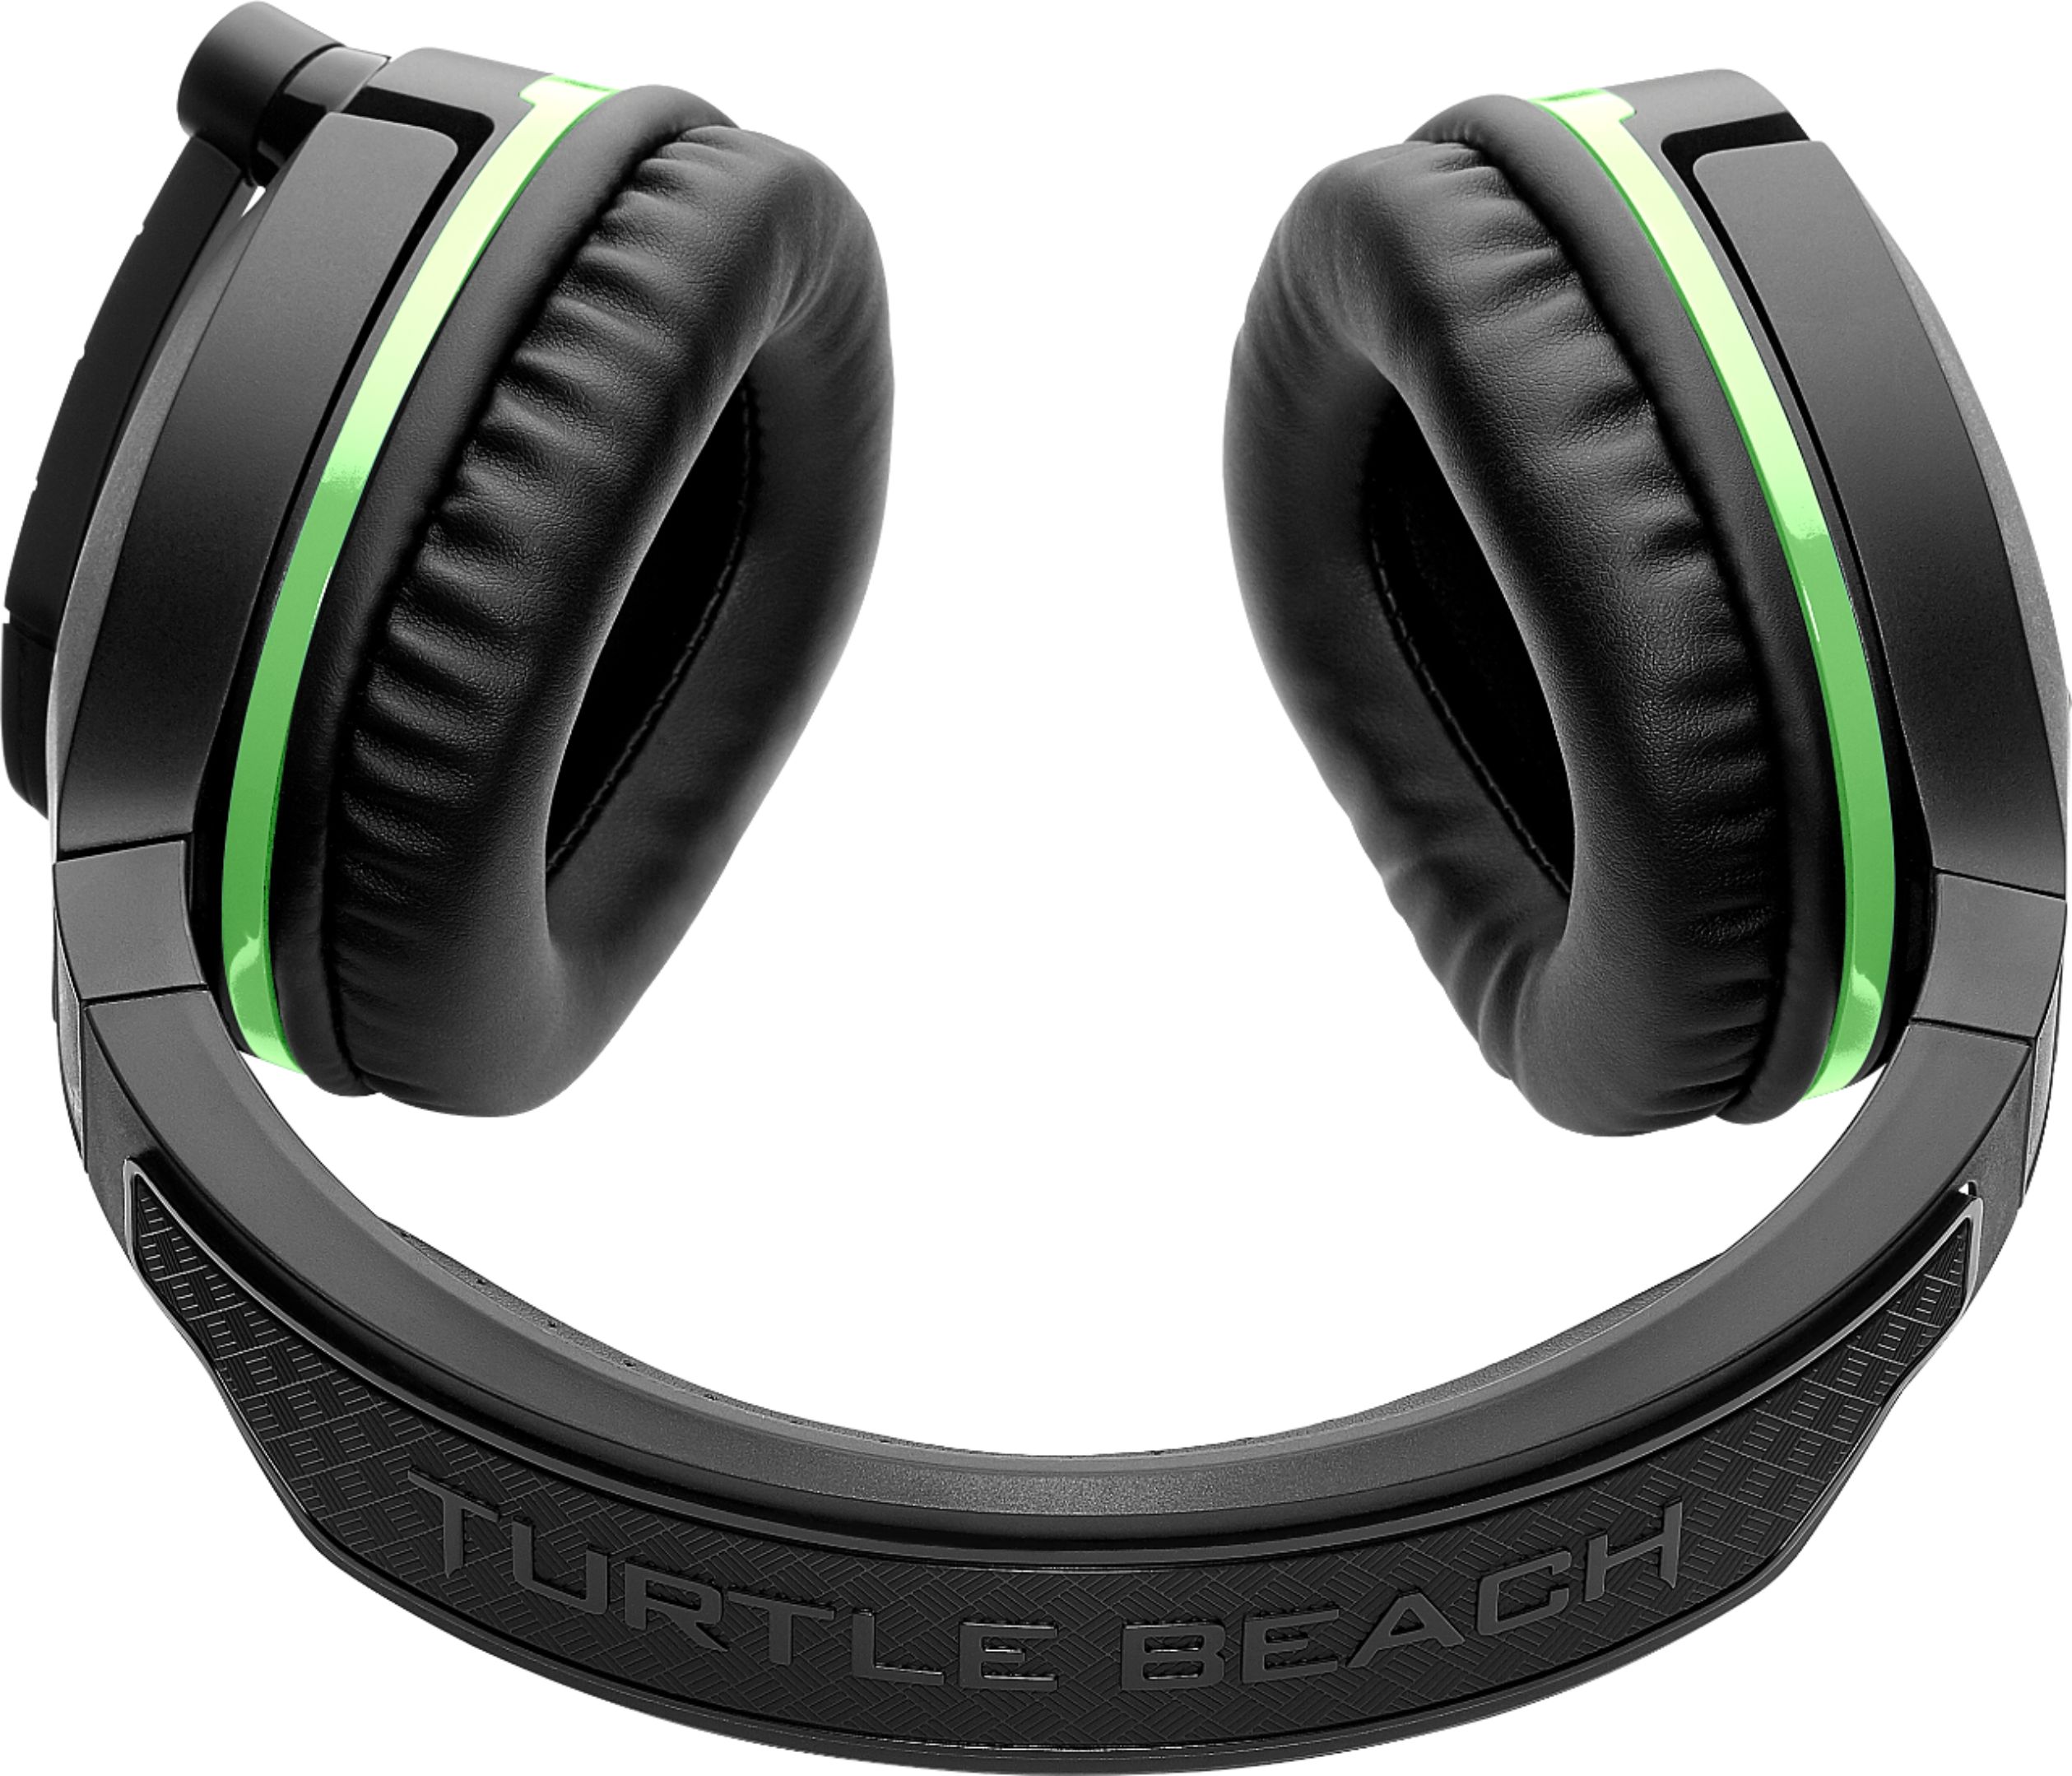 Best Buy: Turtle Beach Stealth 700 Wireless Surround Sound Gaming